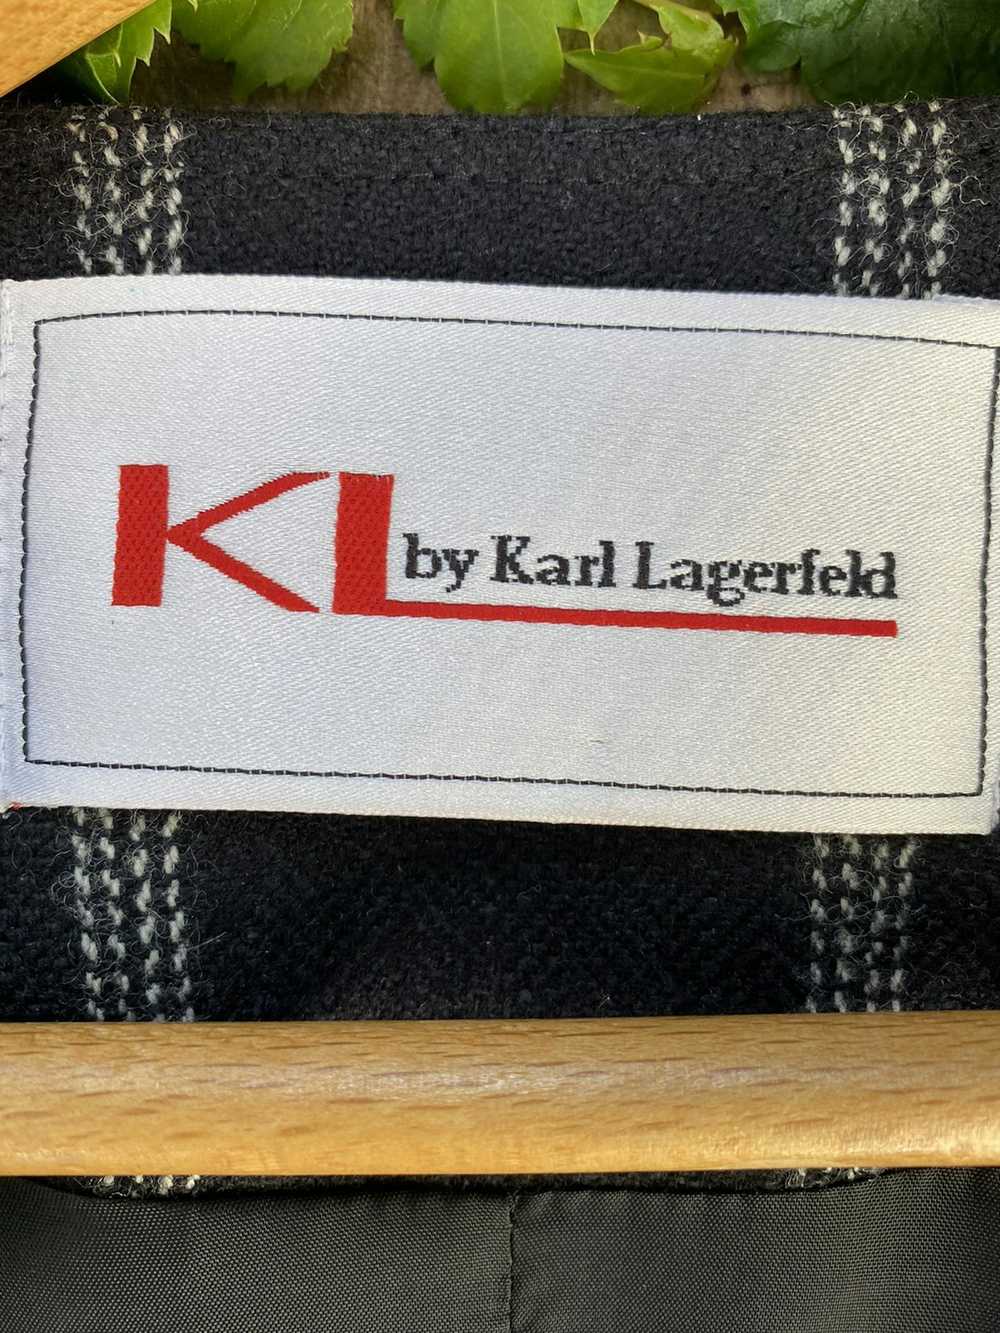 Karl Lagerfeld Vintage Karl Lagerfeld blazer - image 3